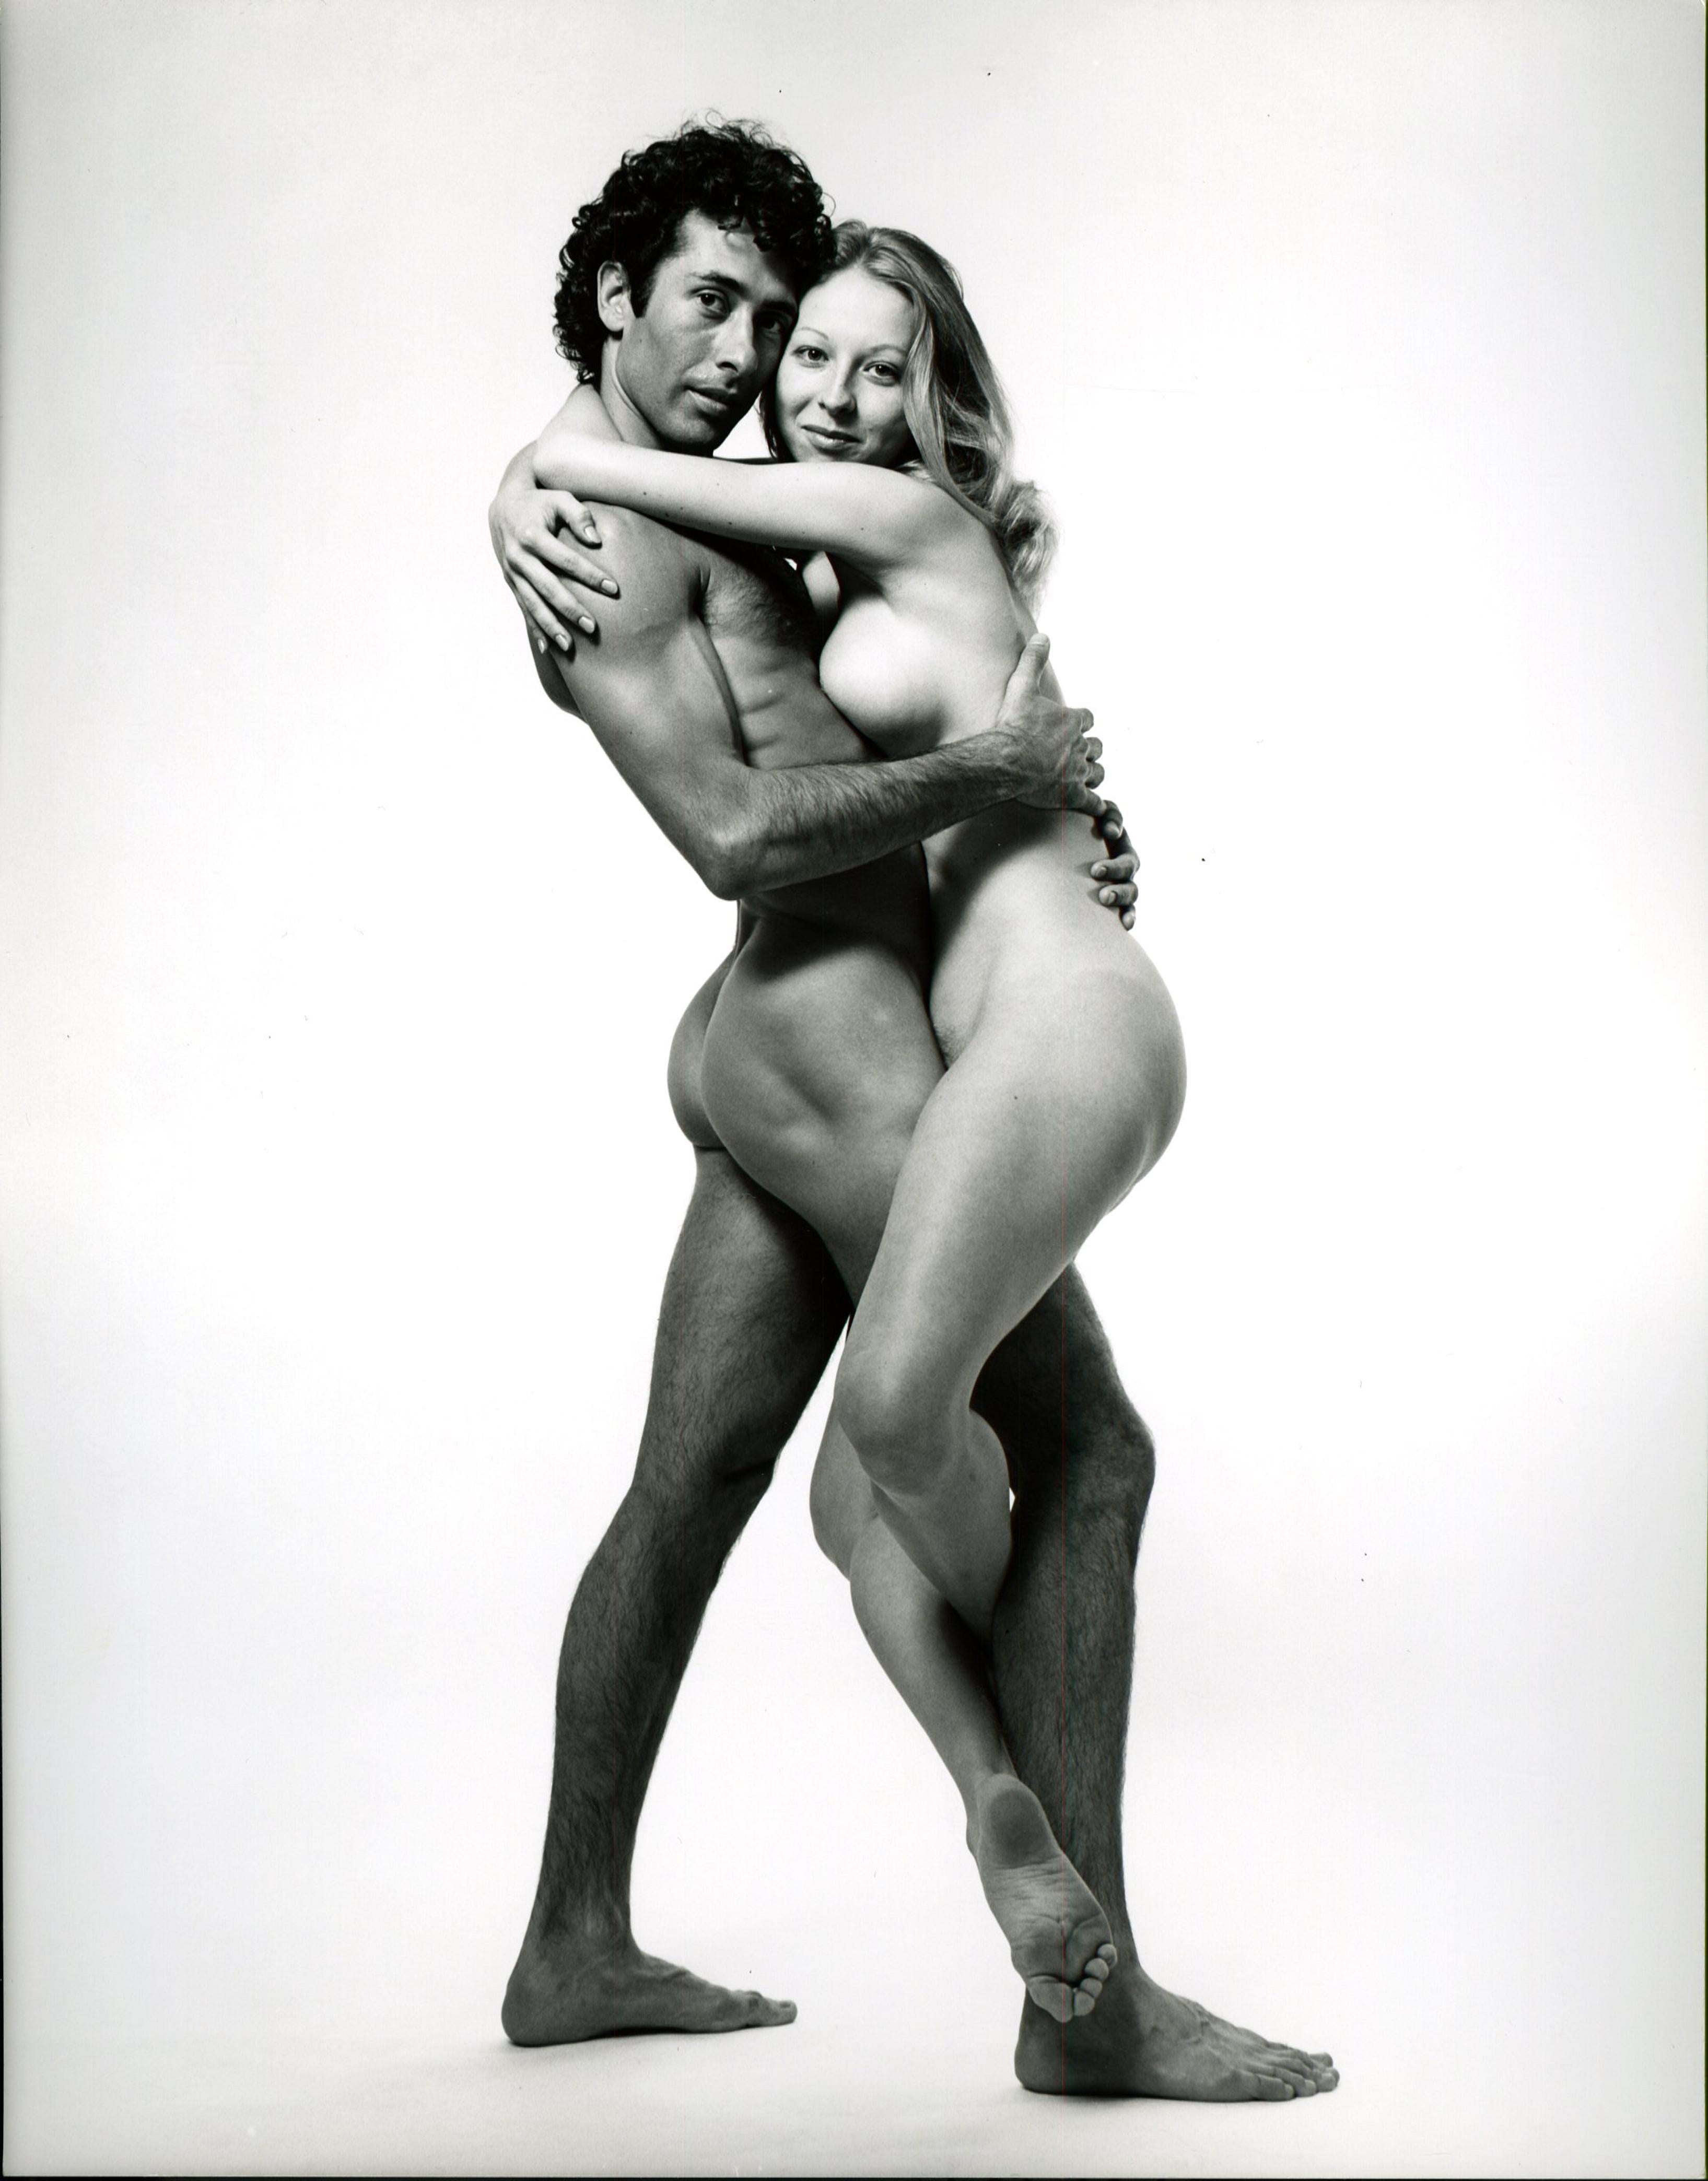 Nude Photograph Jack Mitchell - Marcus et Debbie Williamson ont photographié un nu pour le magazine « After Dark »